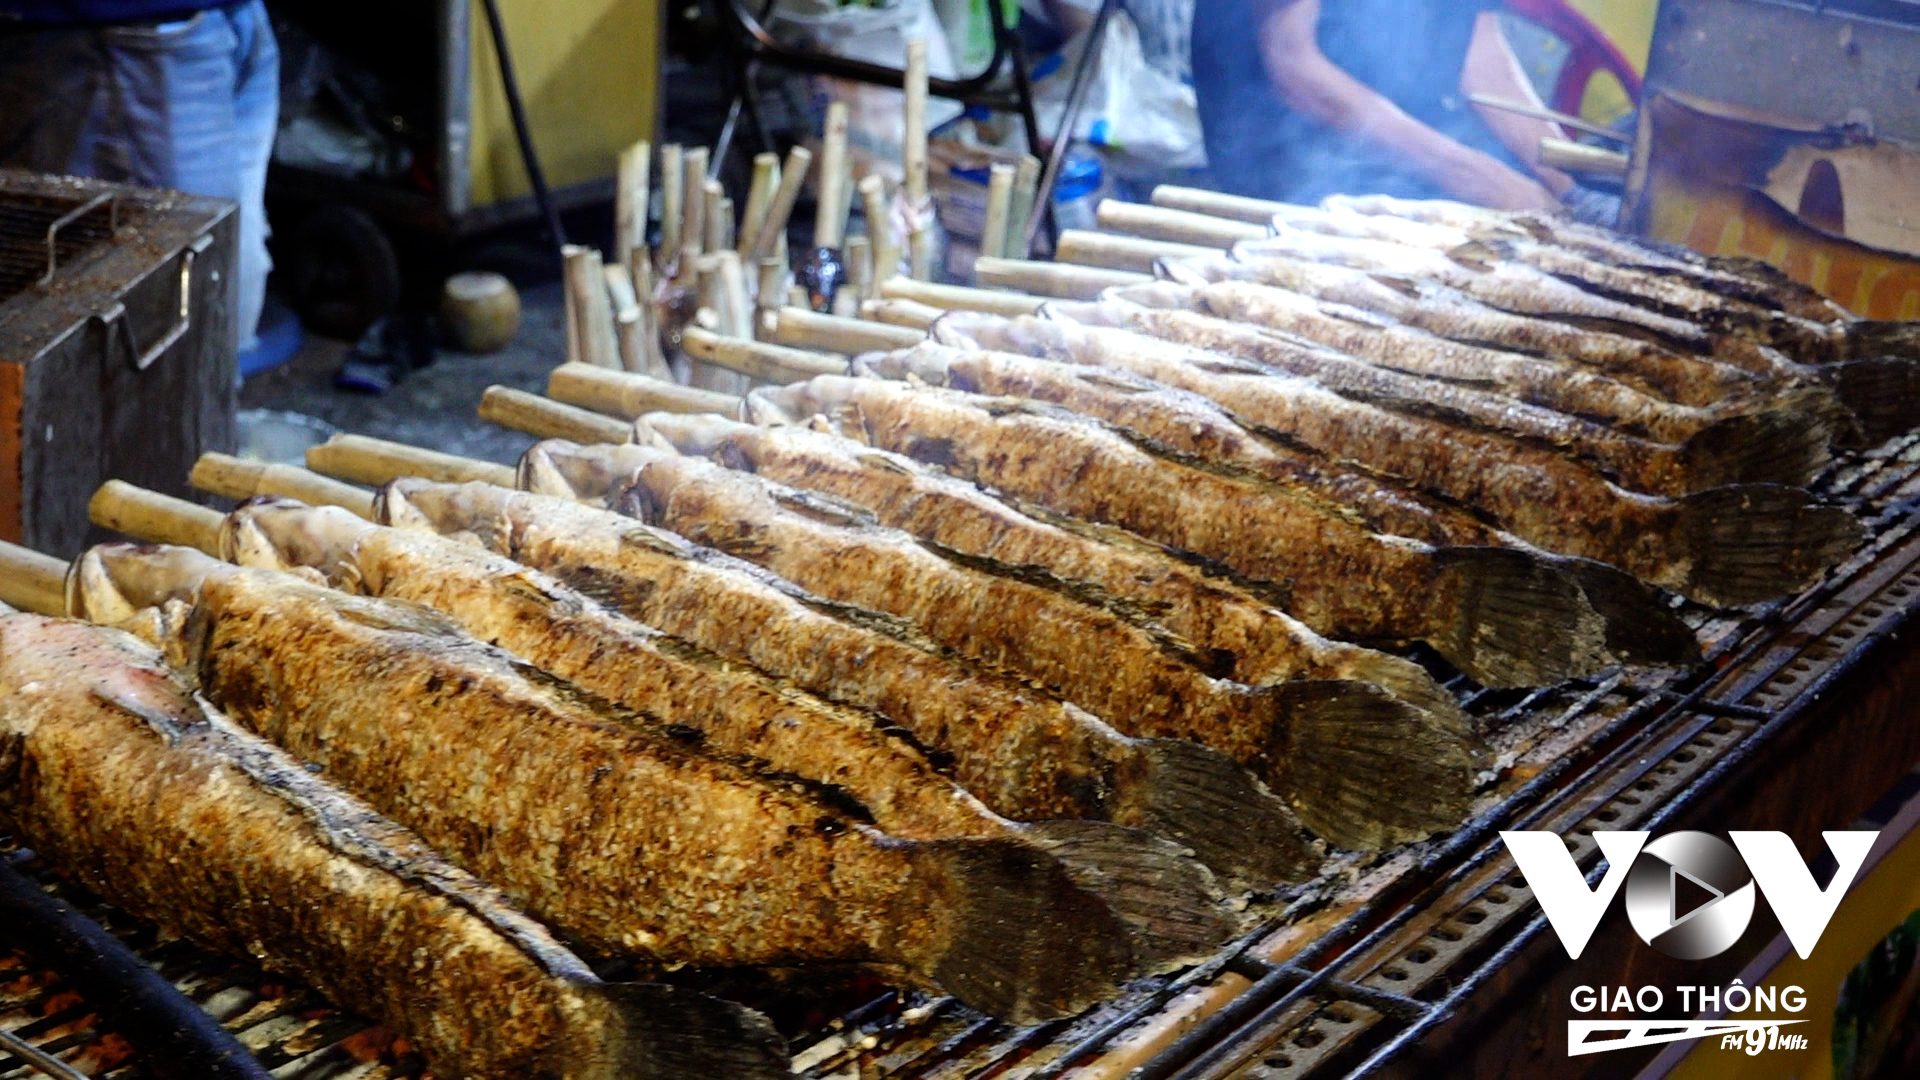 Cá lóc phục vụ ngày vía Thần Tài tại đây chủ yếu được nhập tươi sống từ chợ Bình Điền hoặc các tỉnh miền Tây